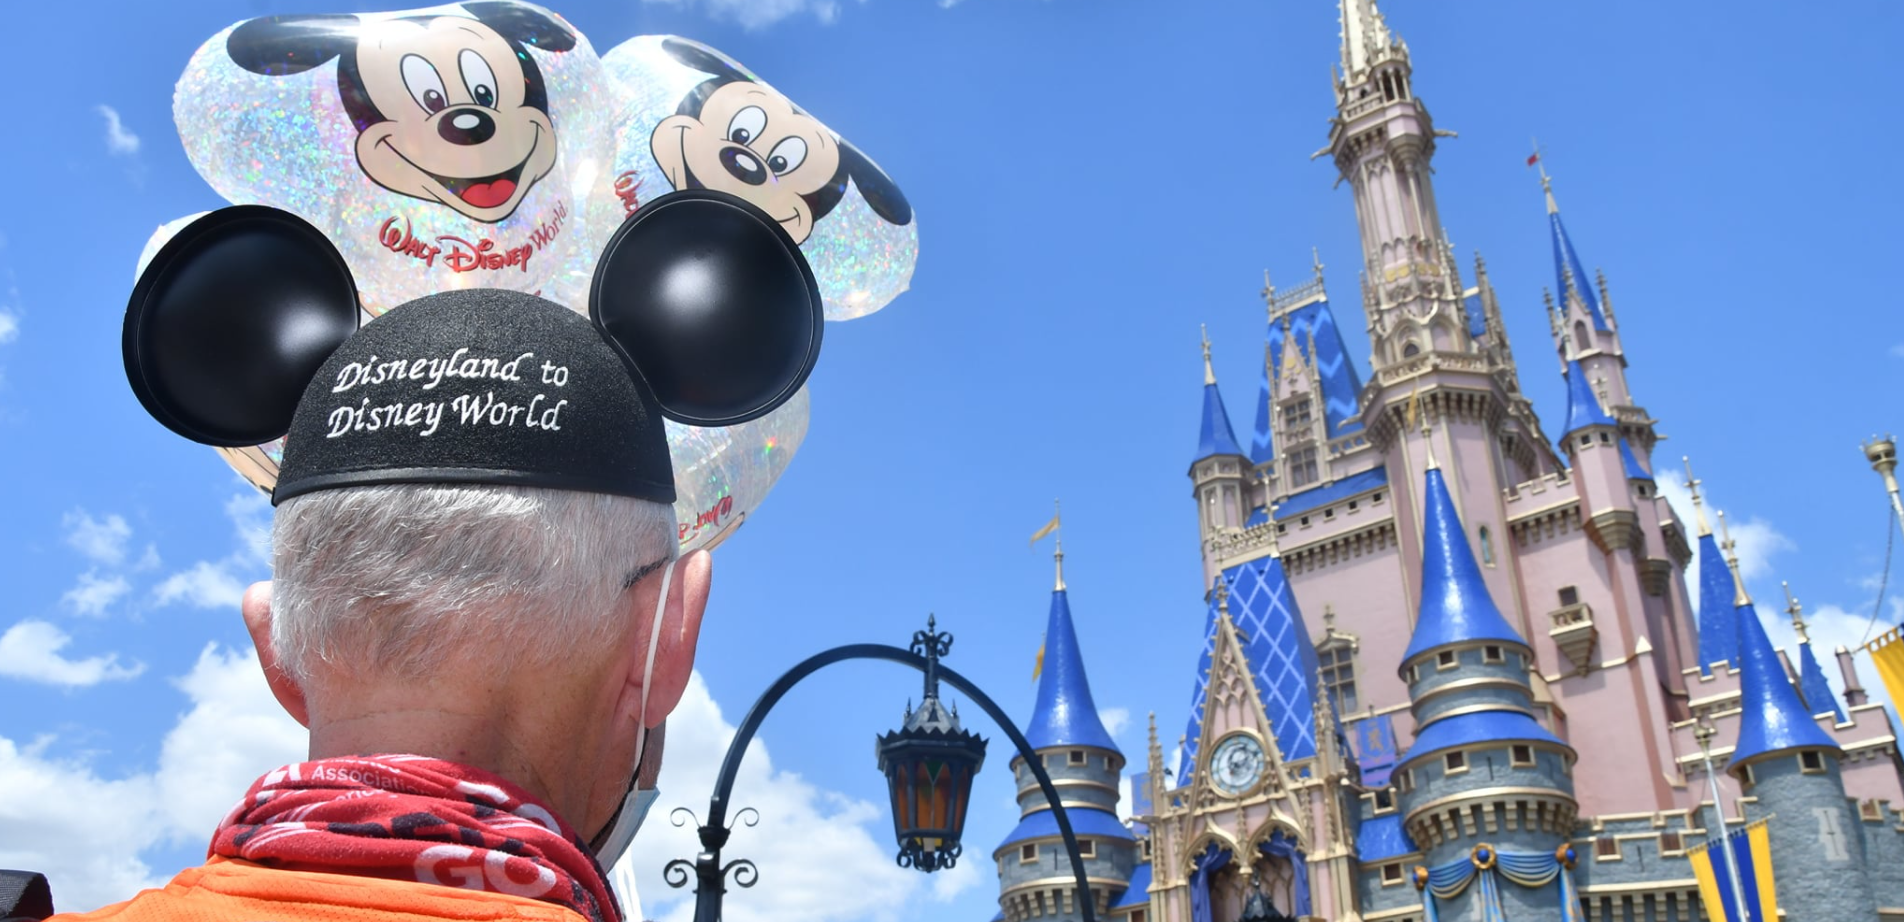 Disneyland to Disney World run